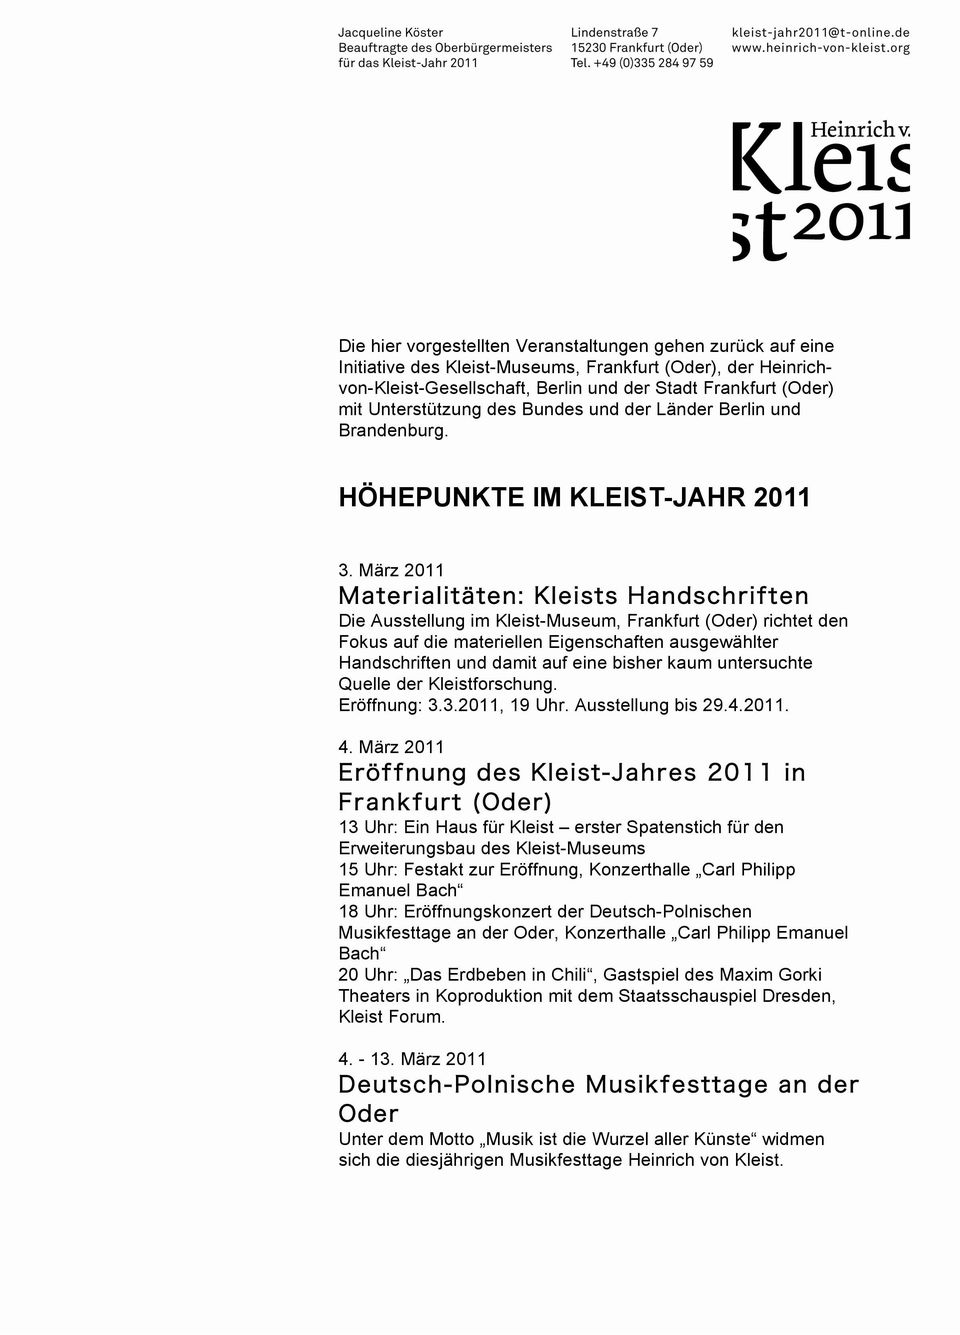 März 2011 Die Ausstellung im Kleist-Museum, Frankfurt (Oder) richtet den Fokus auf die materiellen Eigenschaften ausgewählter Handschriften und damit auf eine bisher kaum untersuchte Quelle der